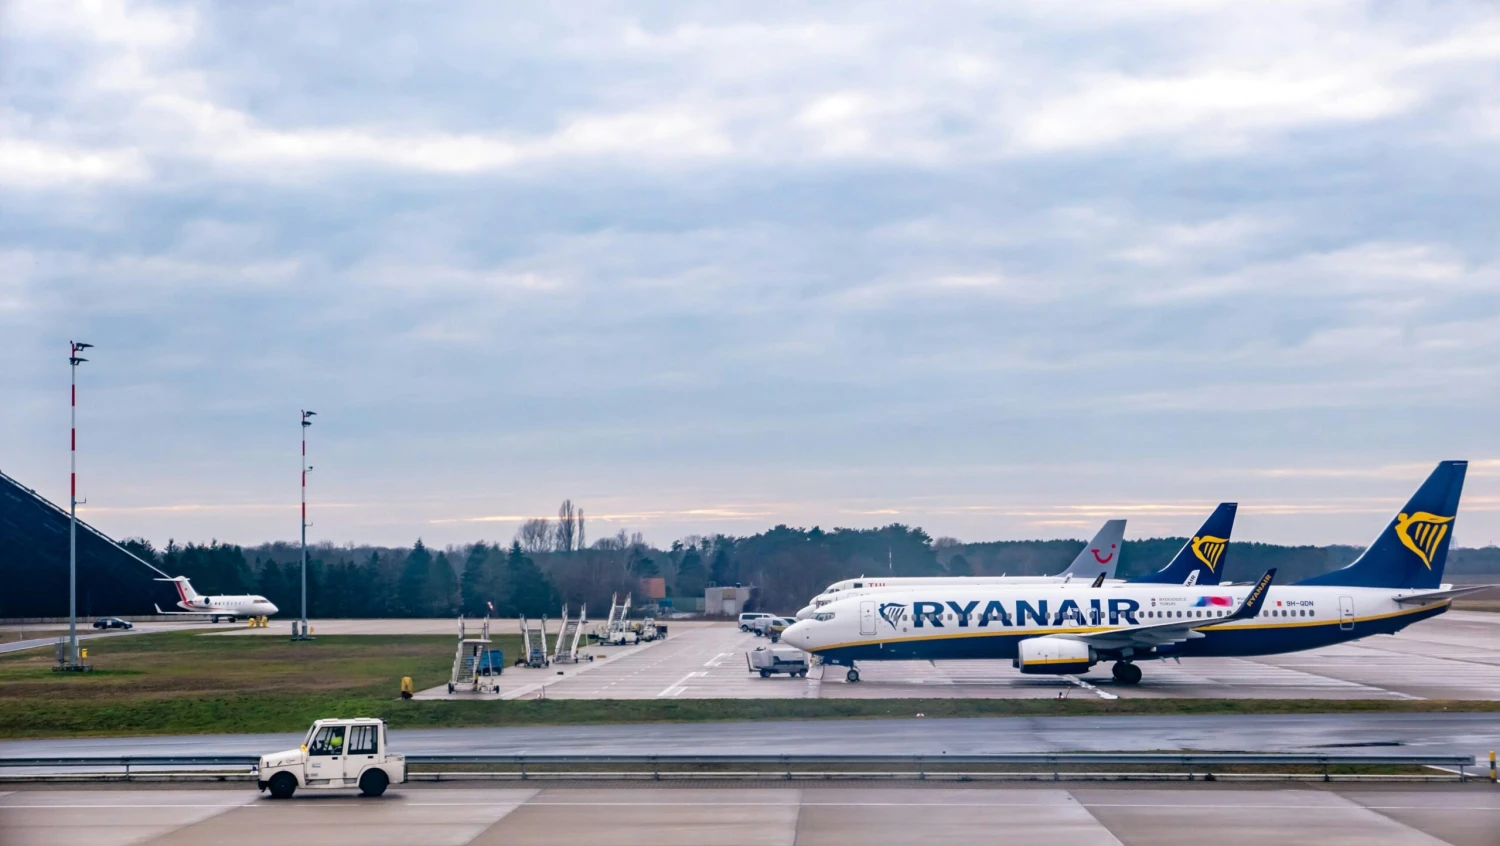 Ryanair hlásí rekordní výsledky. Aerolince loni vzrostl zisk o 34 procent na 47,4 miliardy